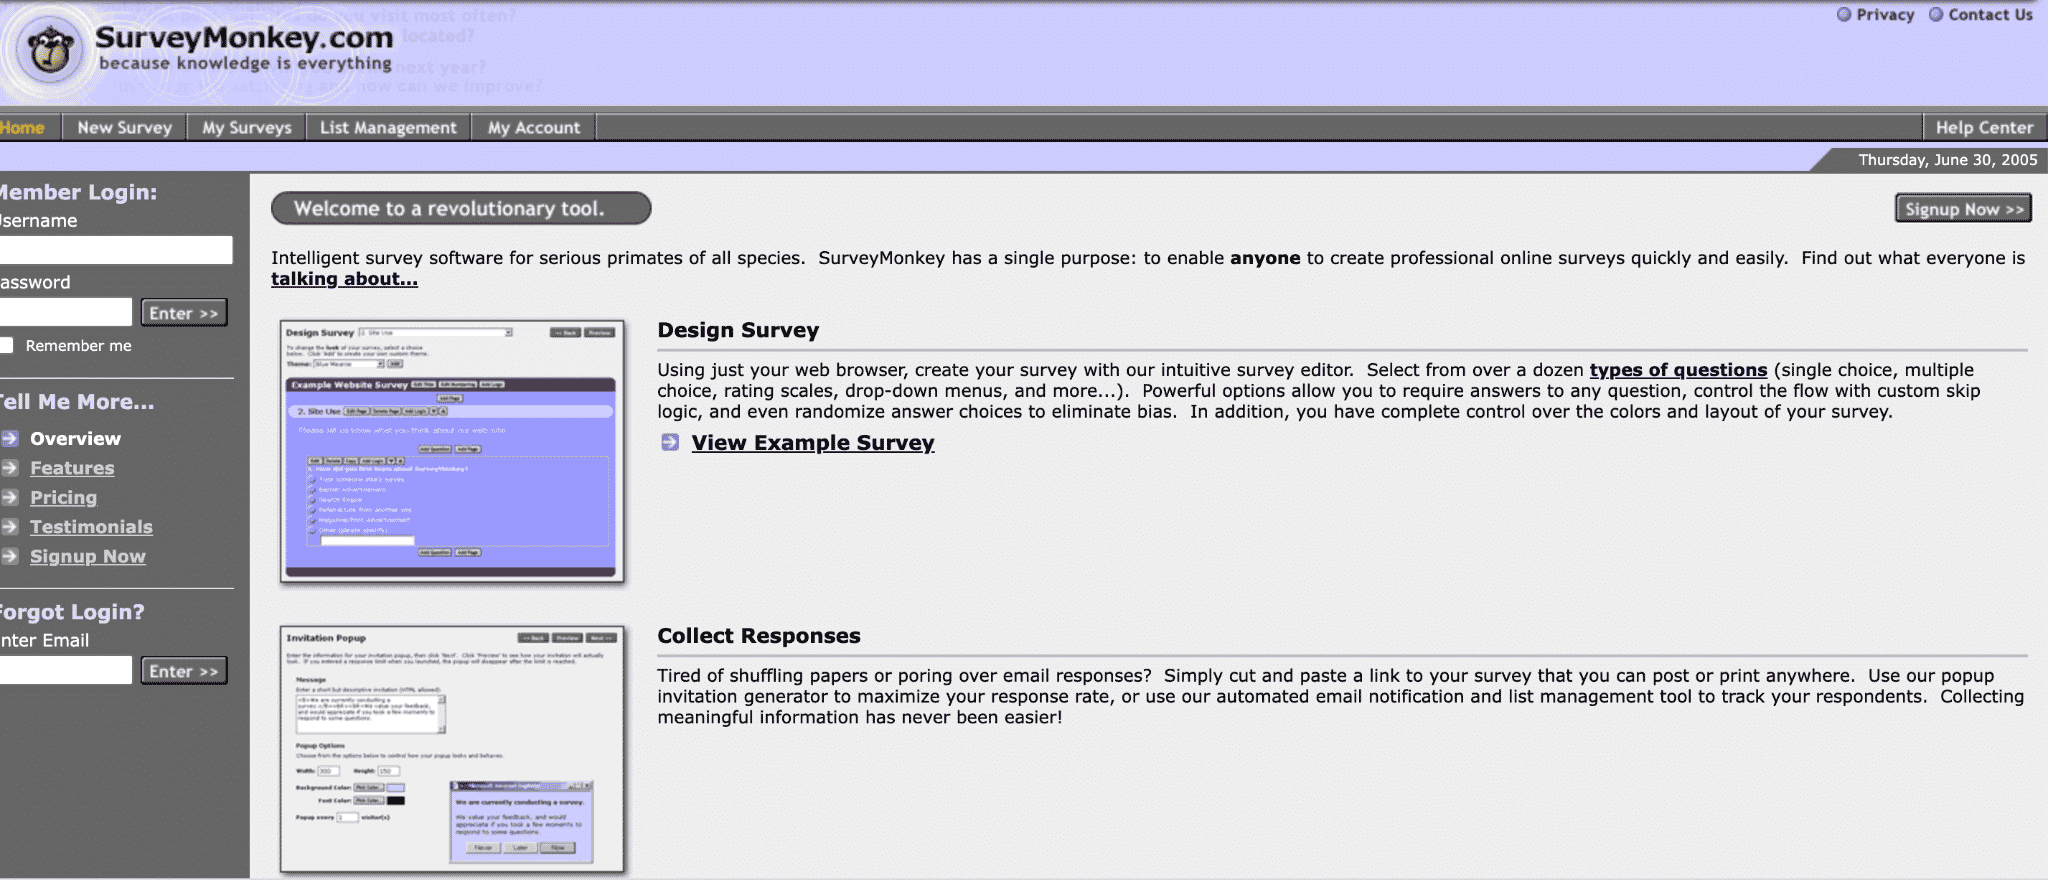 从2005年开始的SurveyMonkey主页屏幕截图。英雄文本占据“所有物种严重灵长类动物的智能调查软件”。